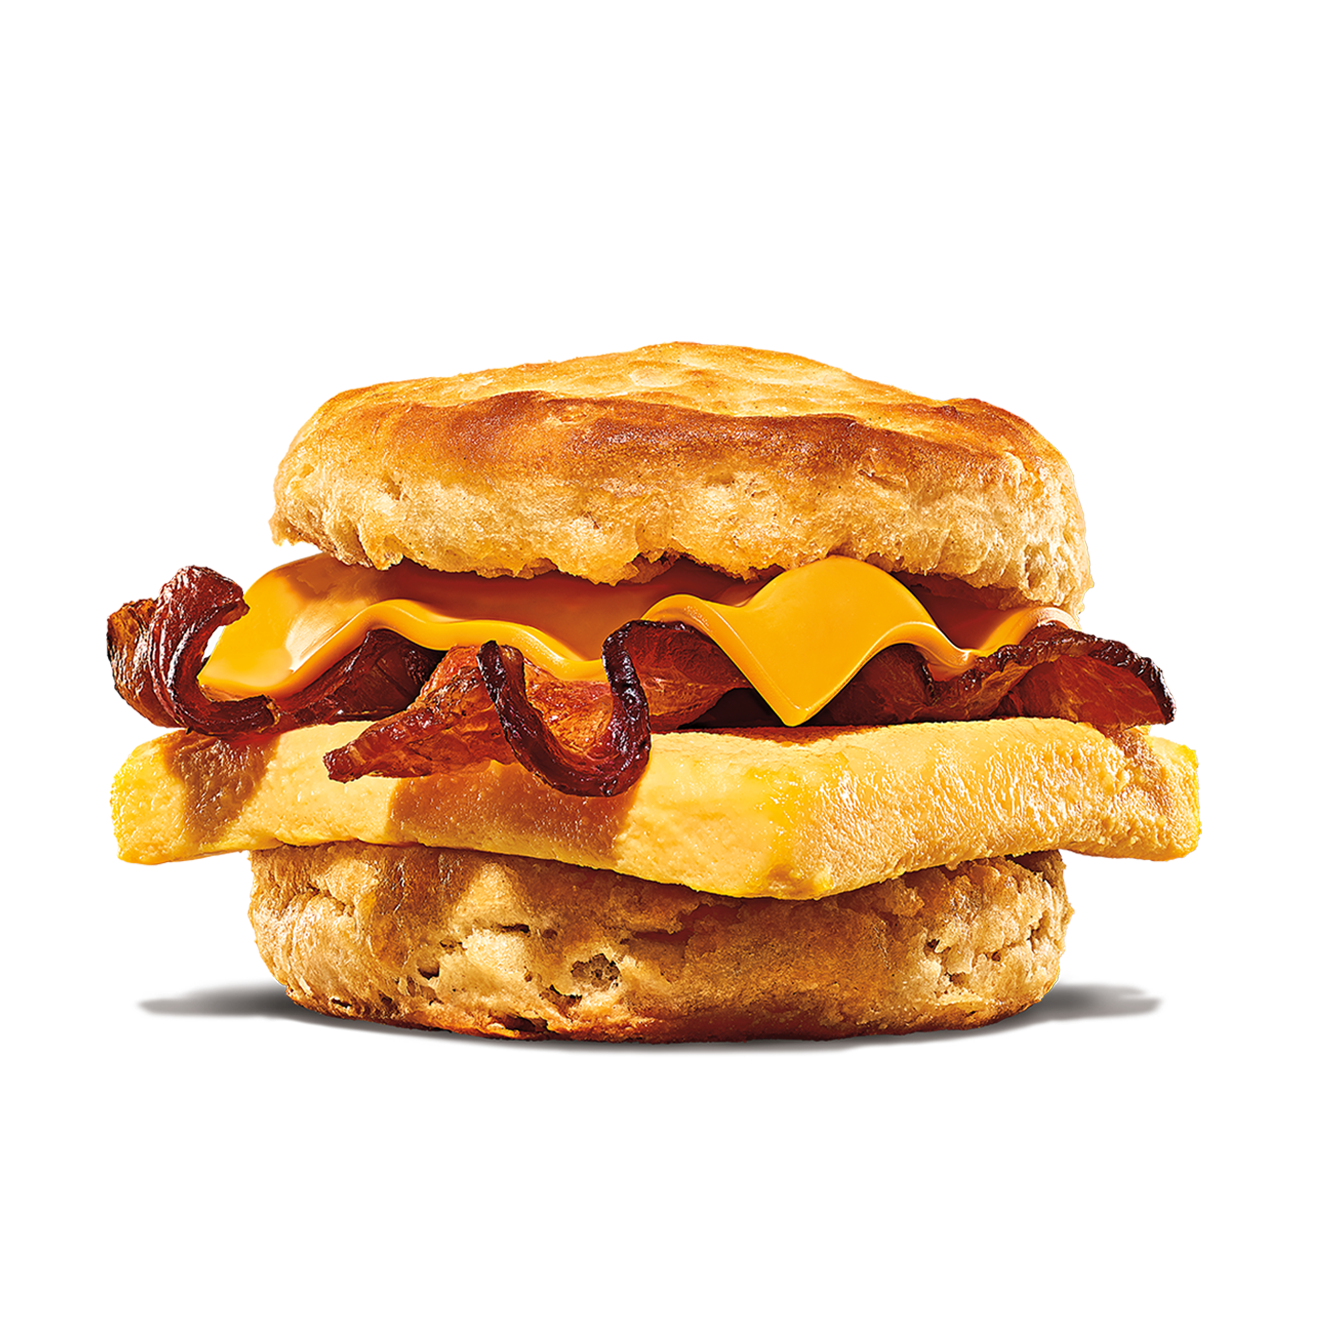 Burger King La Puente (626)888-6319